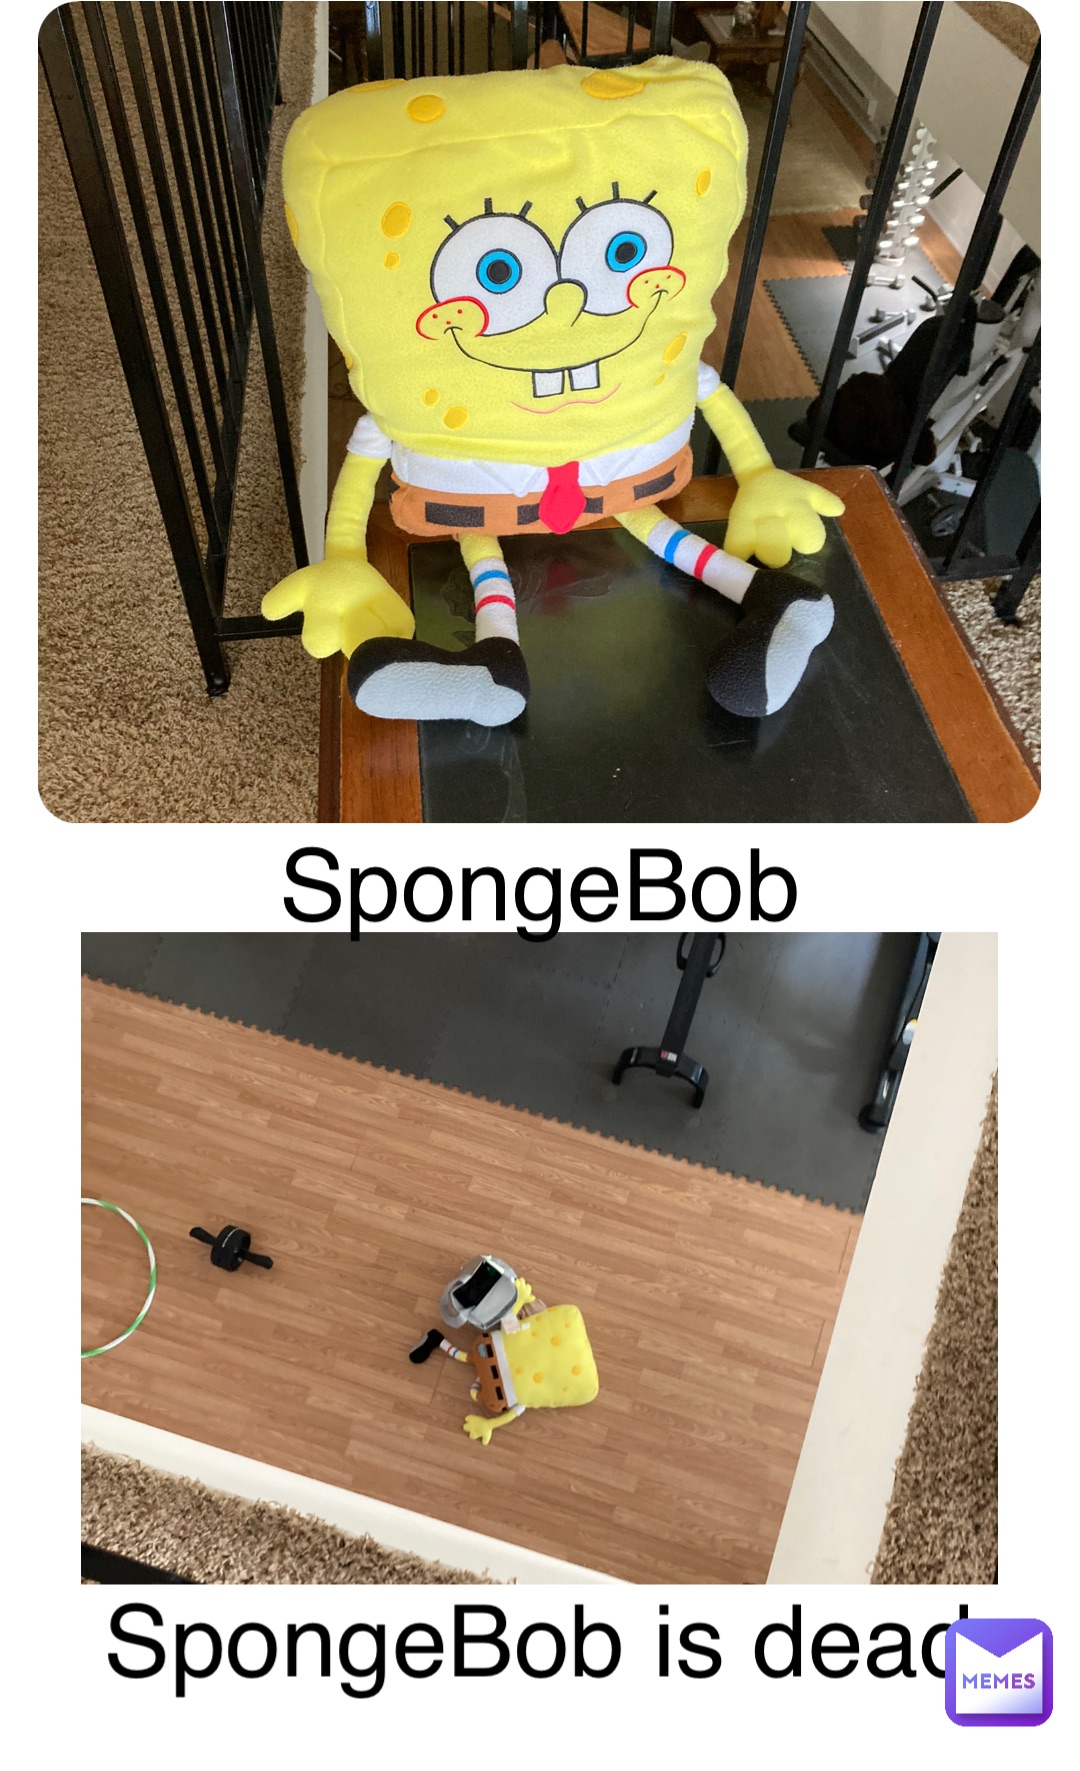 Double tap to edit SpongeBob SpongeBob is dead